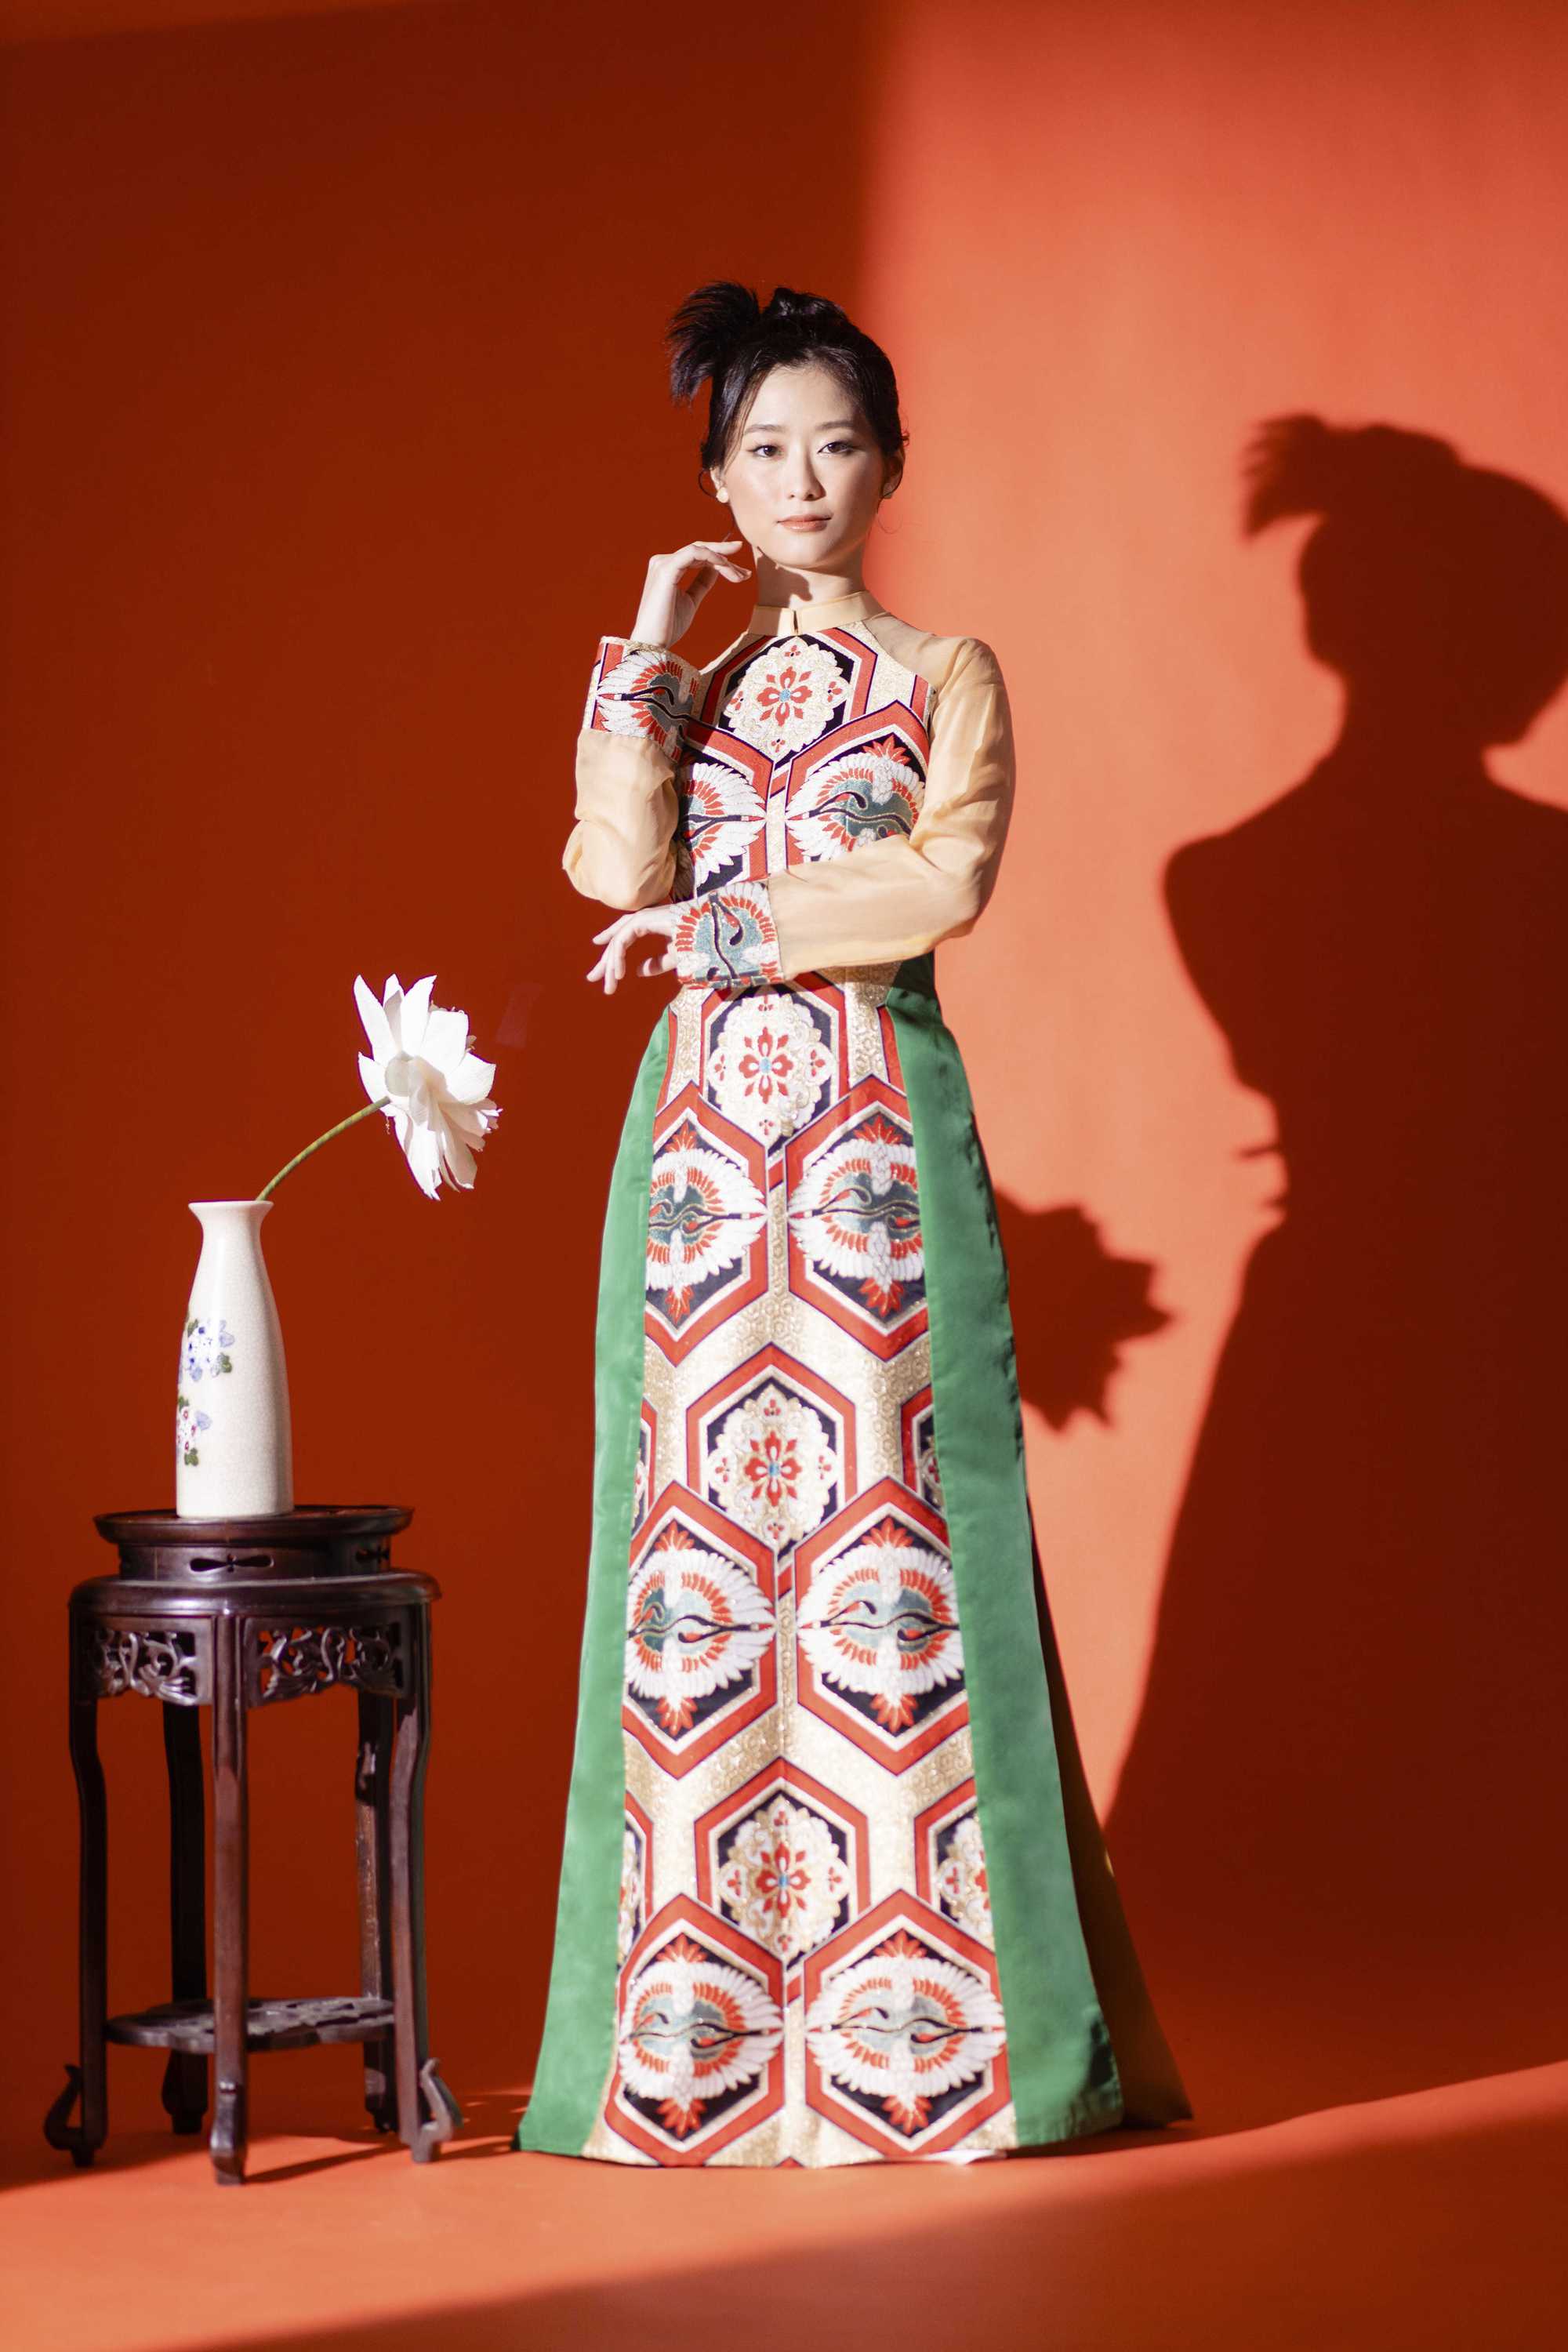 Nàng thơ phim “Em và Trịnh” diện áo dài Việt lấy cảm hứng từ văn hóa Nhật - Ảnh 2.